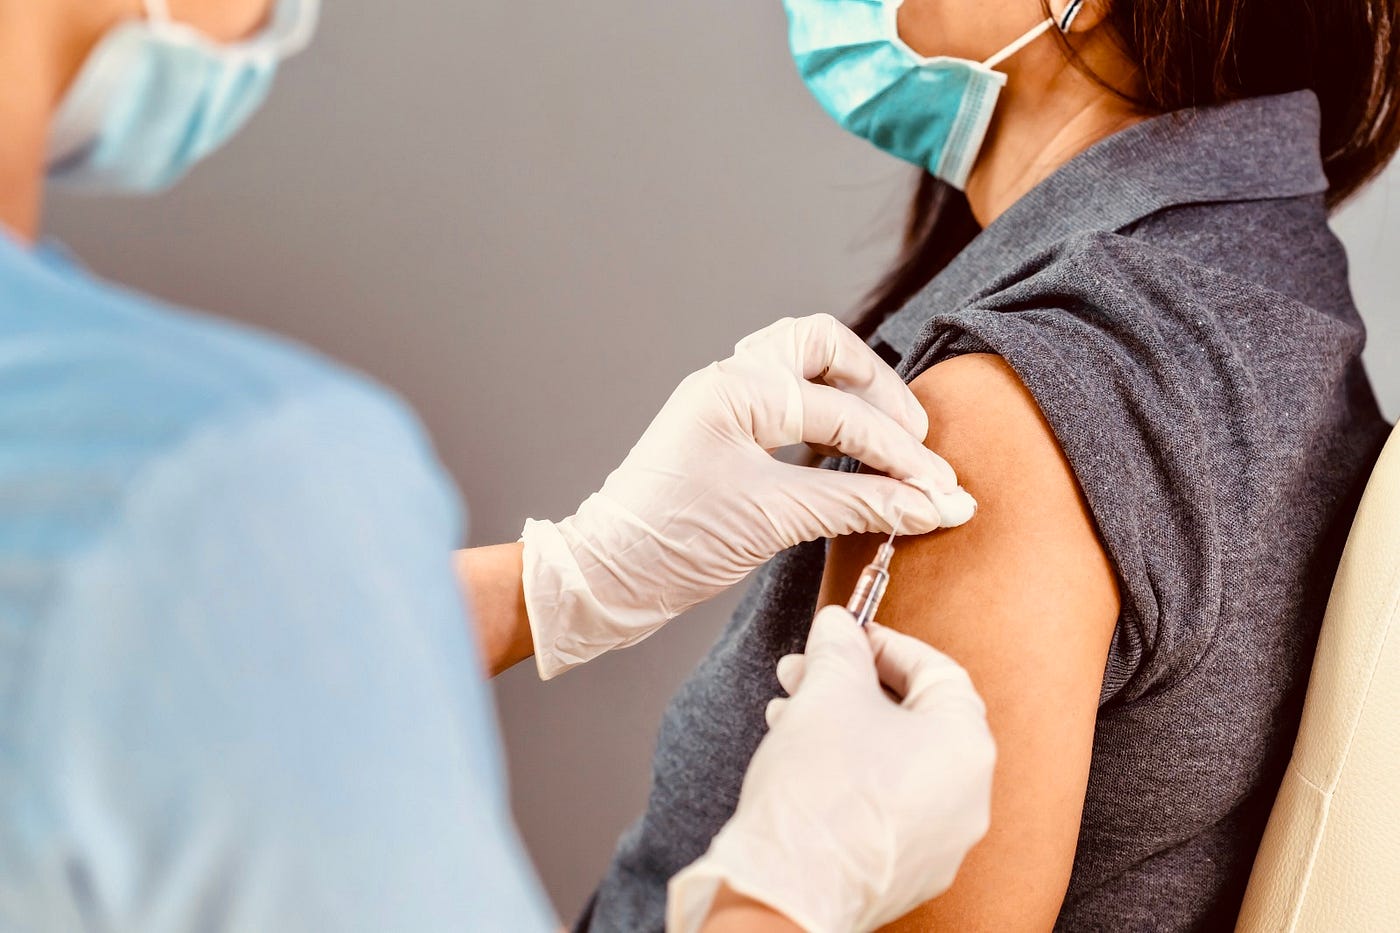 Sağlık Bakanlığı’ndan ‘ATS kaynaklı aşılarda tehlike’ iddialarına yalanlama